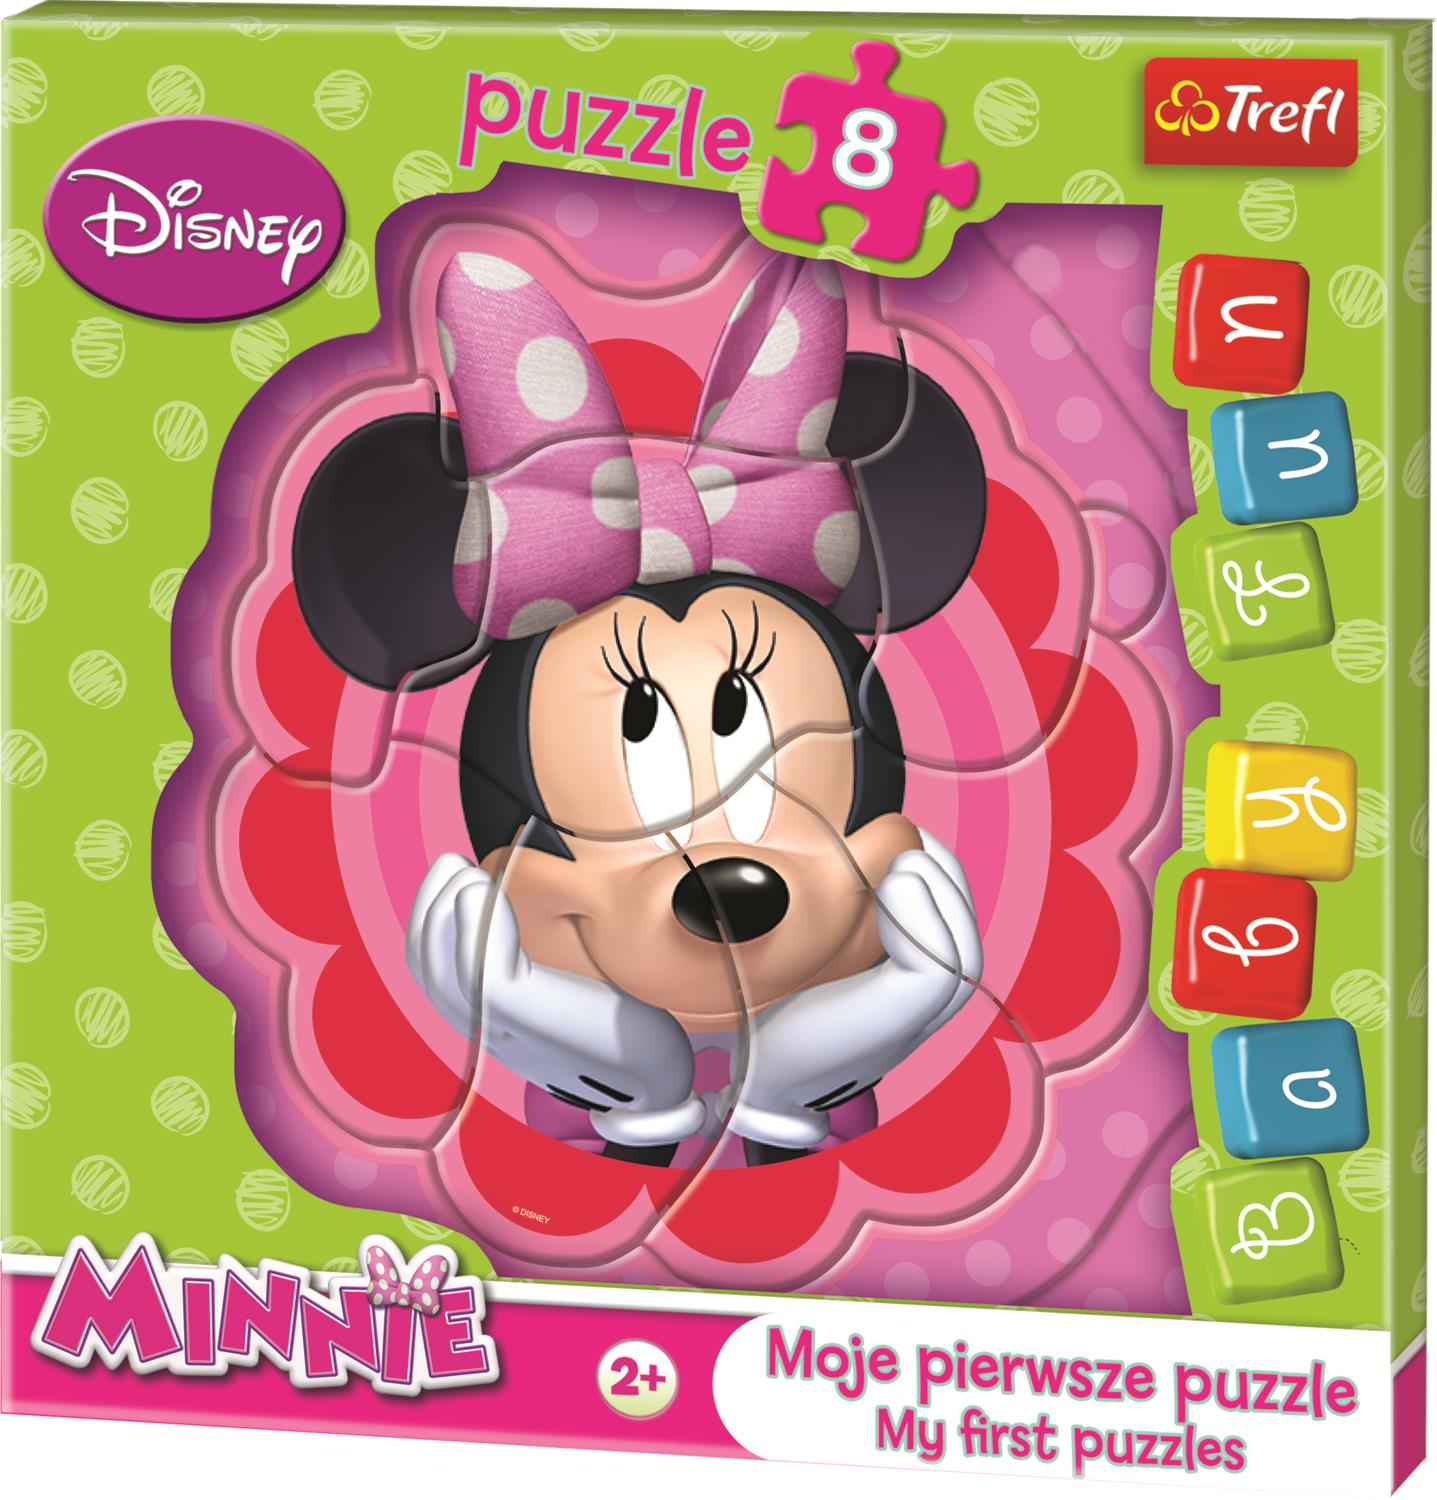 Trefl Puzzle 36117 Minnie Bowtique, Disney 8 Parça Baby Puzzle